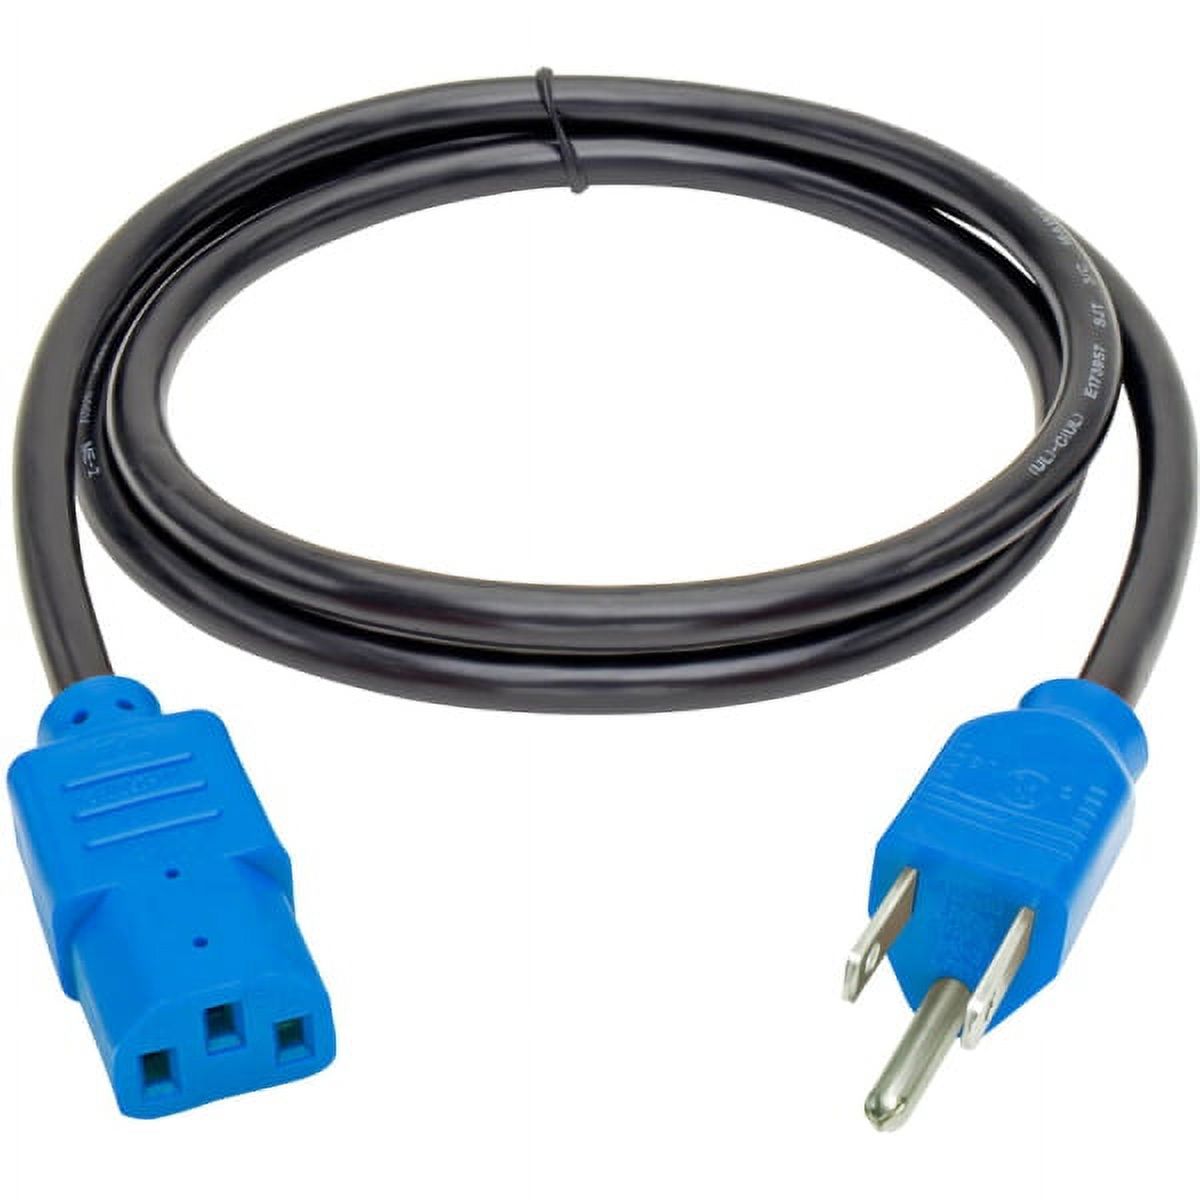 Tripp Lite P006-004-BL 18 AWG NEMA 5-15P to IEC-320-C13 Power Cord, Blue, 4' - image 2 of 4